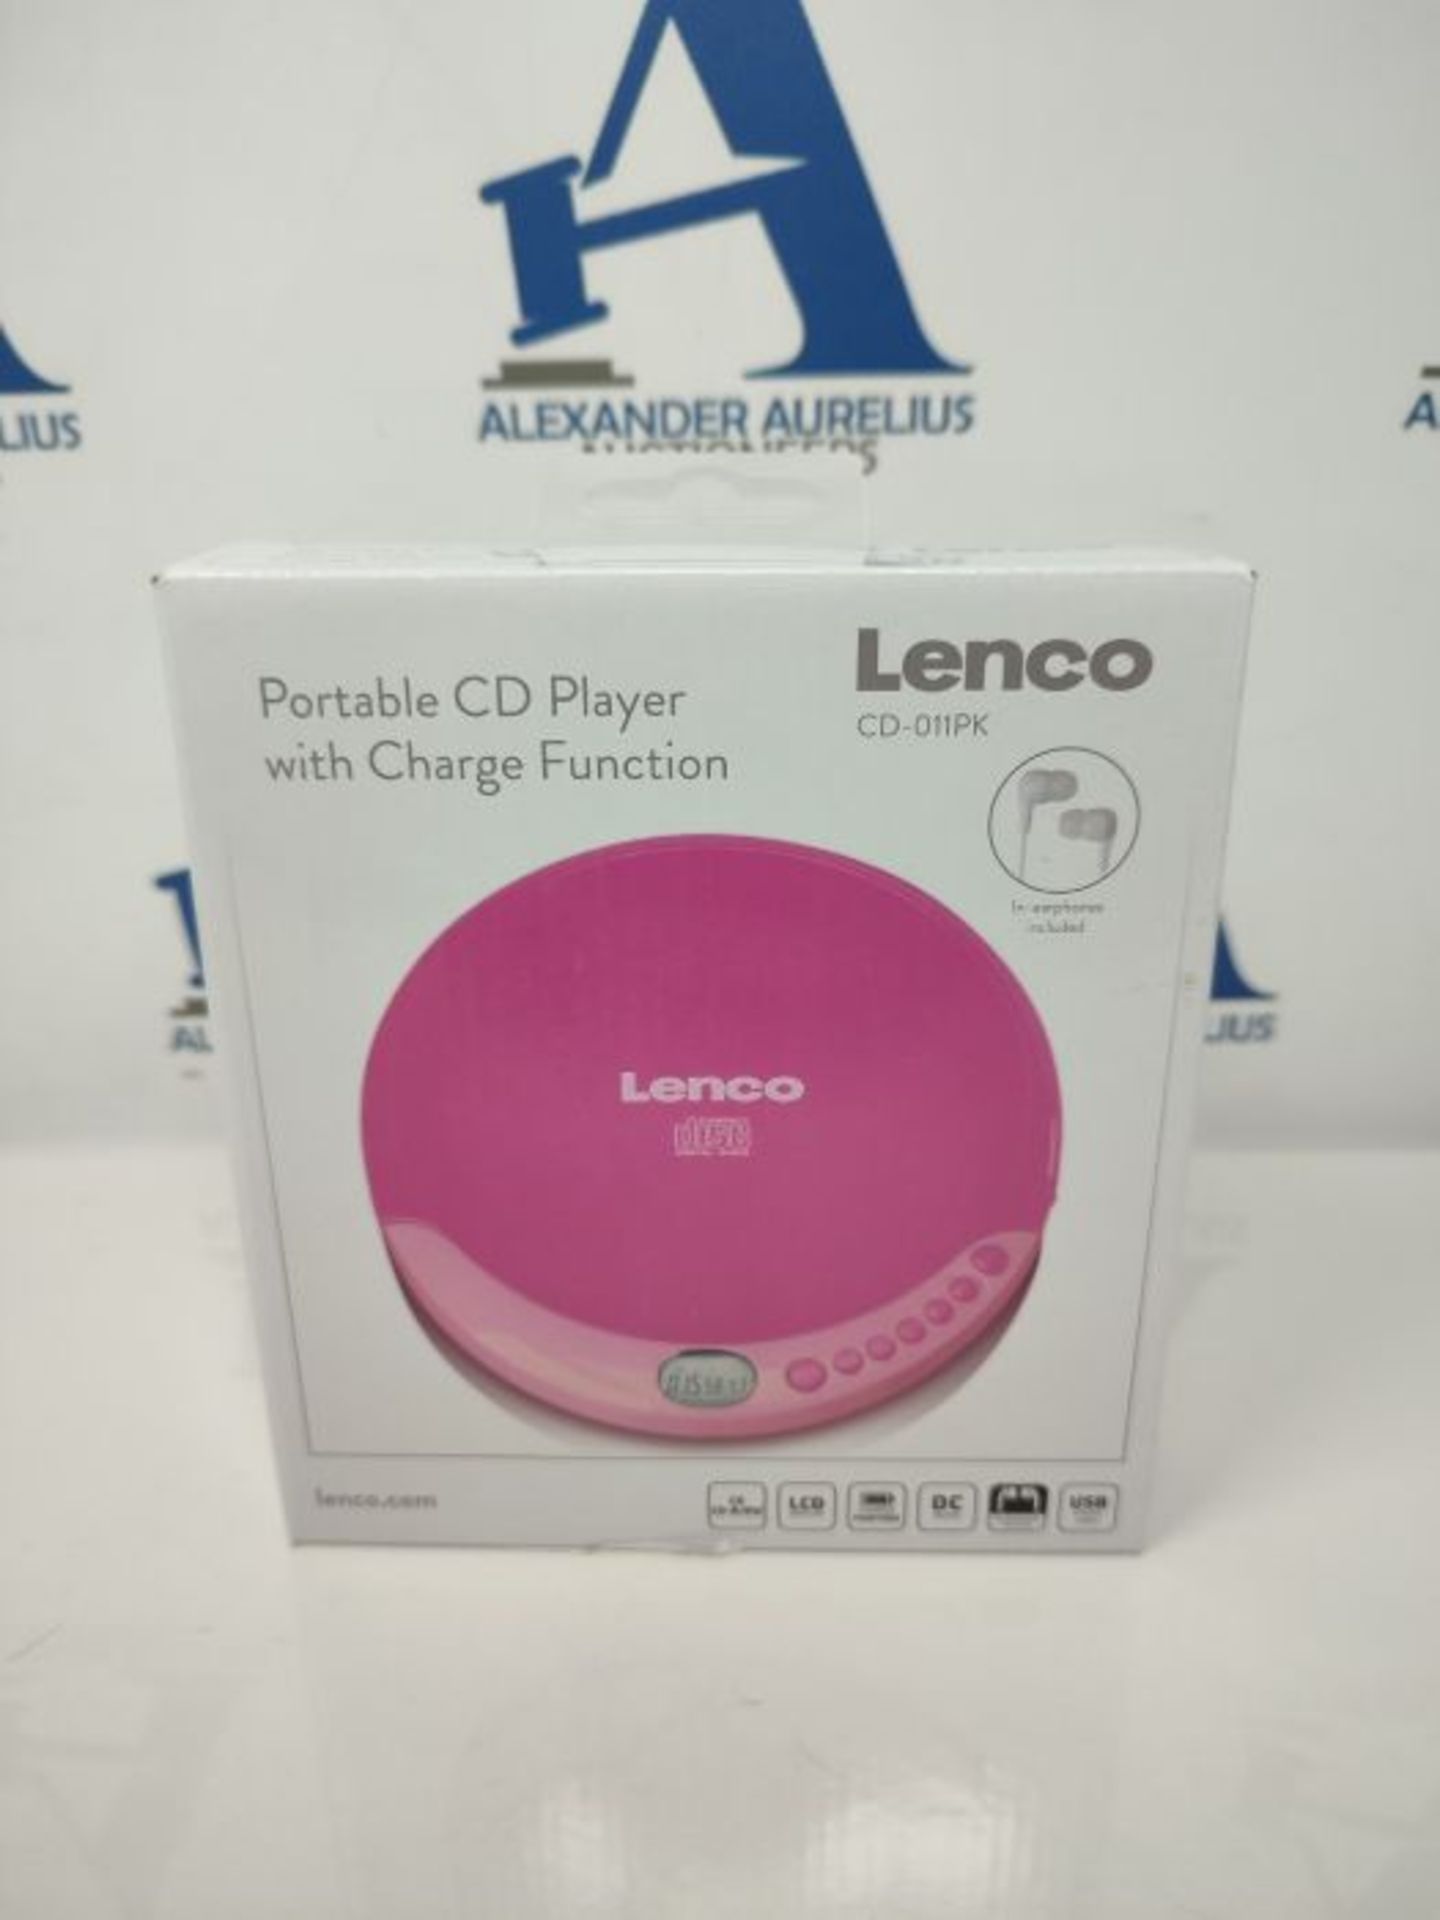 Lenco CD-011 - Portable CD Player Walkman - Diskman - CD Walkman - with Headphones and - Image 2 of 3